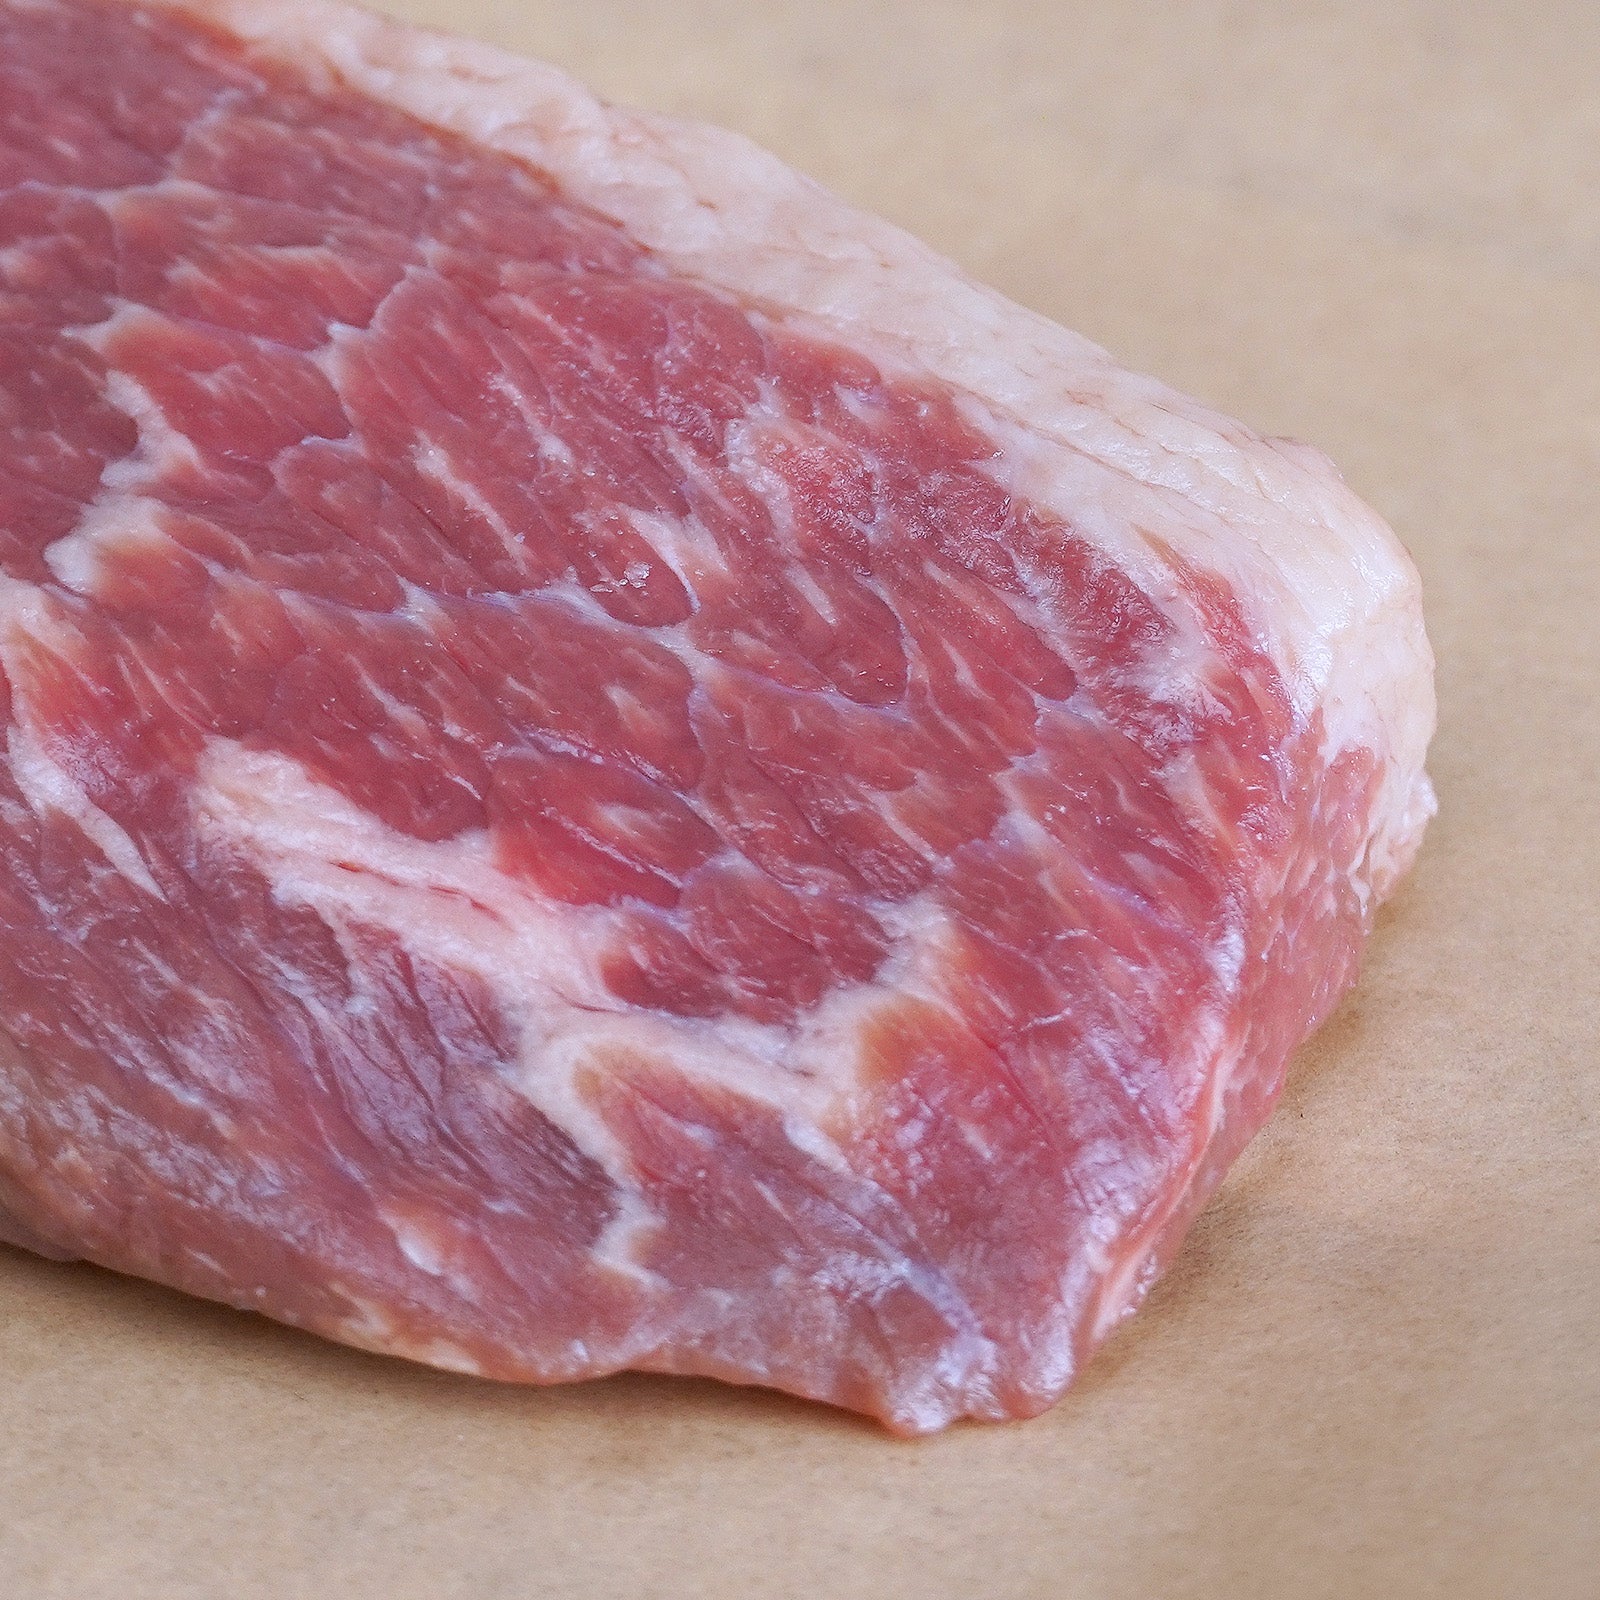 プレミアム グレインフェッドビーフ 霜降り 牛肉 イチボ モモ肉 ステーキ オーストラリア産 放牧牛 (300g) ホライズンファームズ